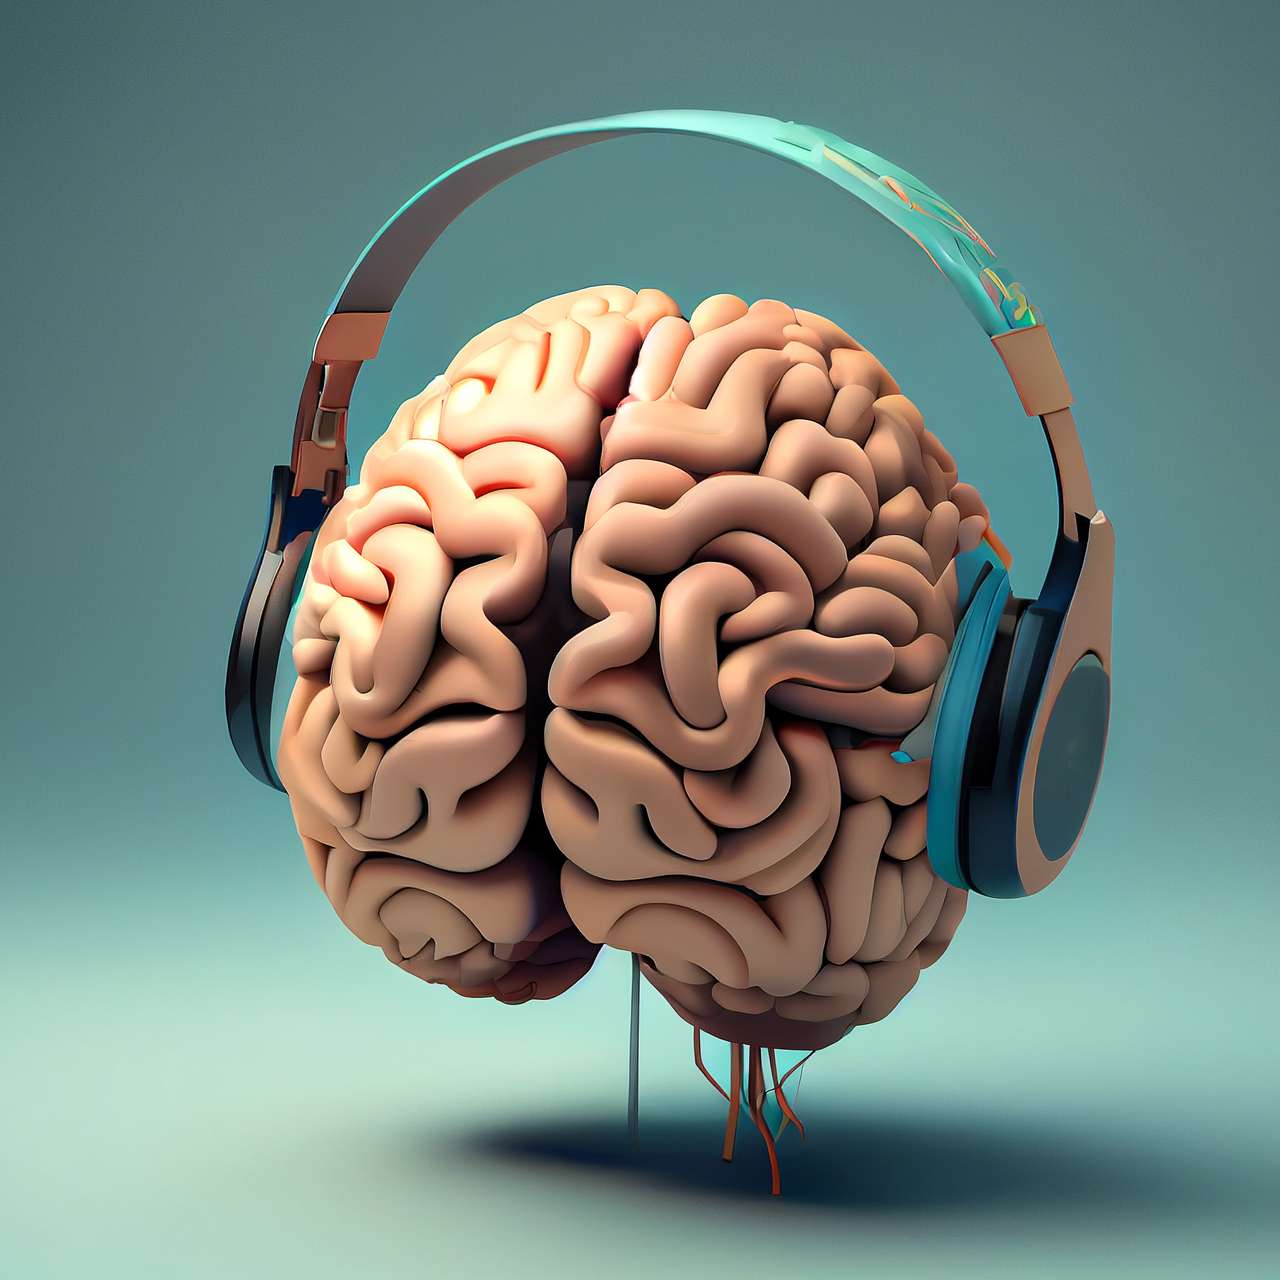 Santé de l'enfant: comment la musique peut nourrir votre cerveau